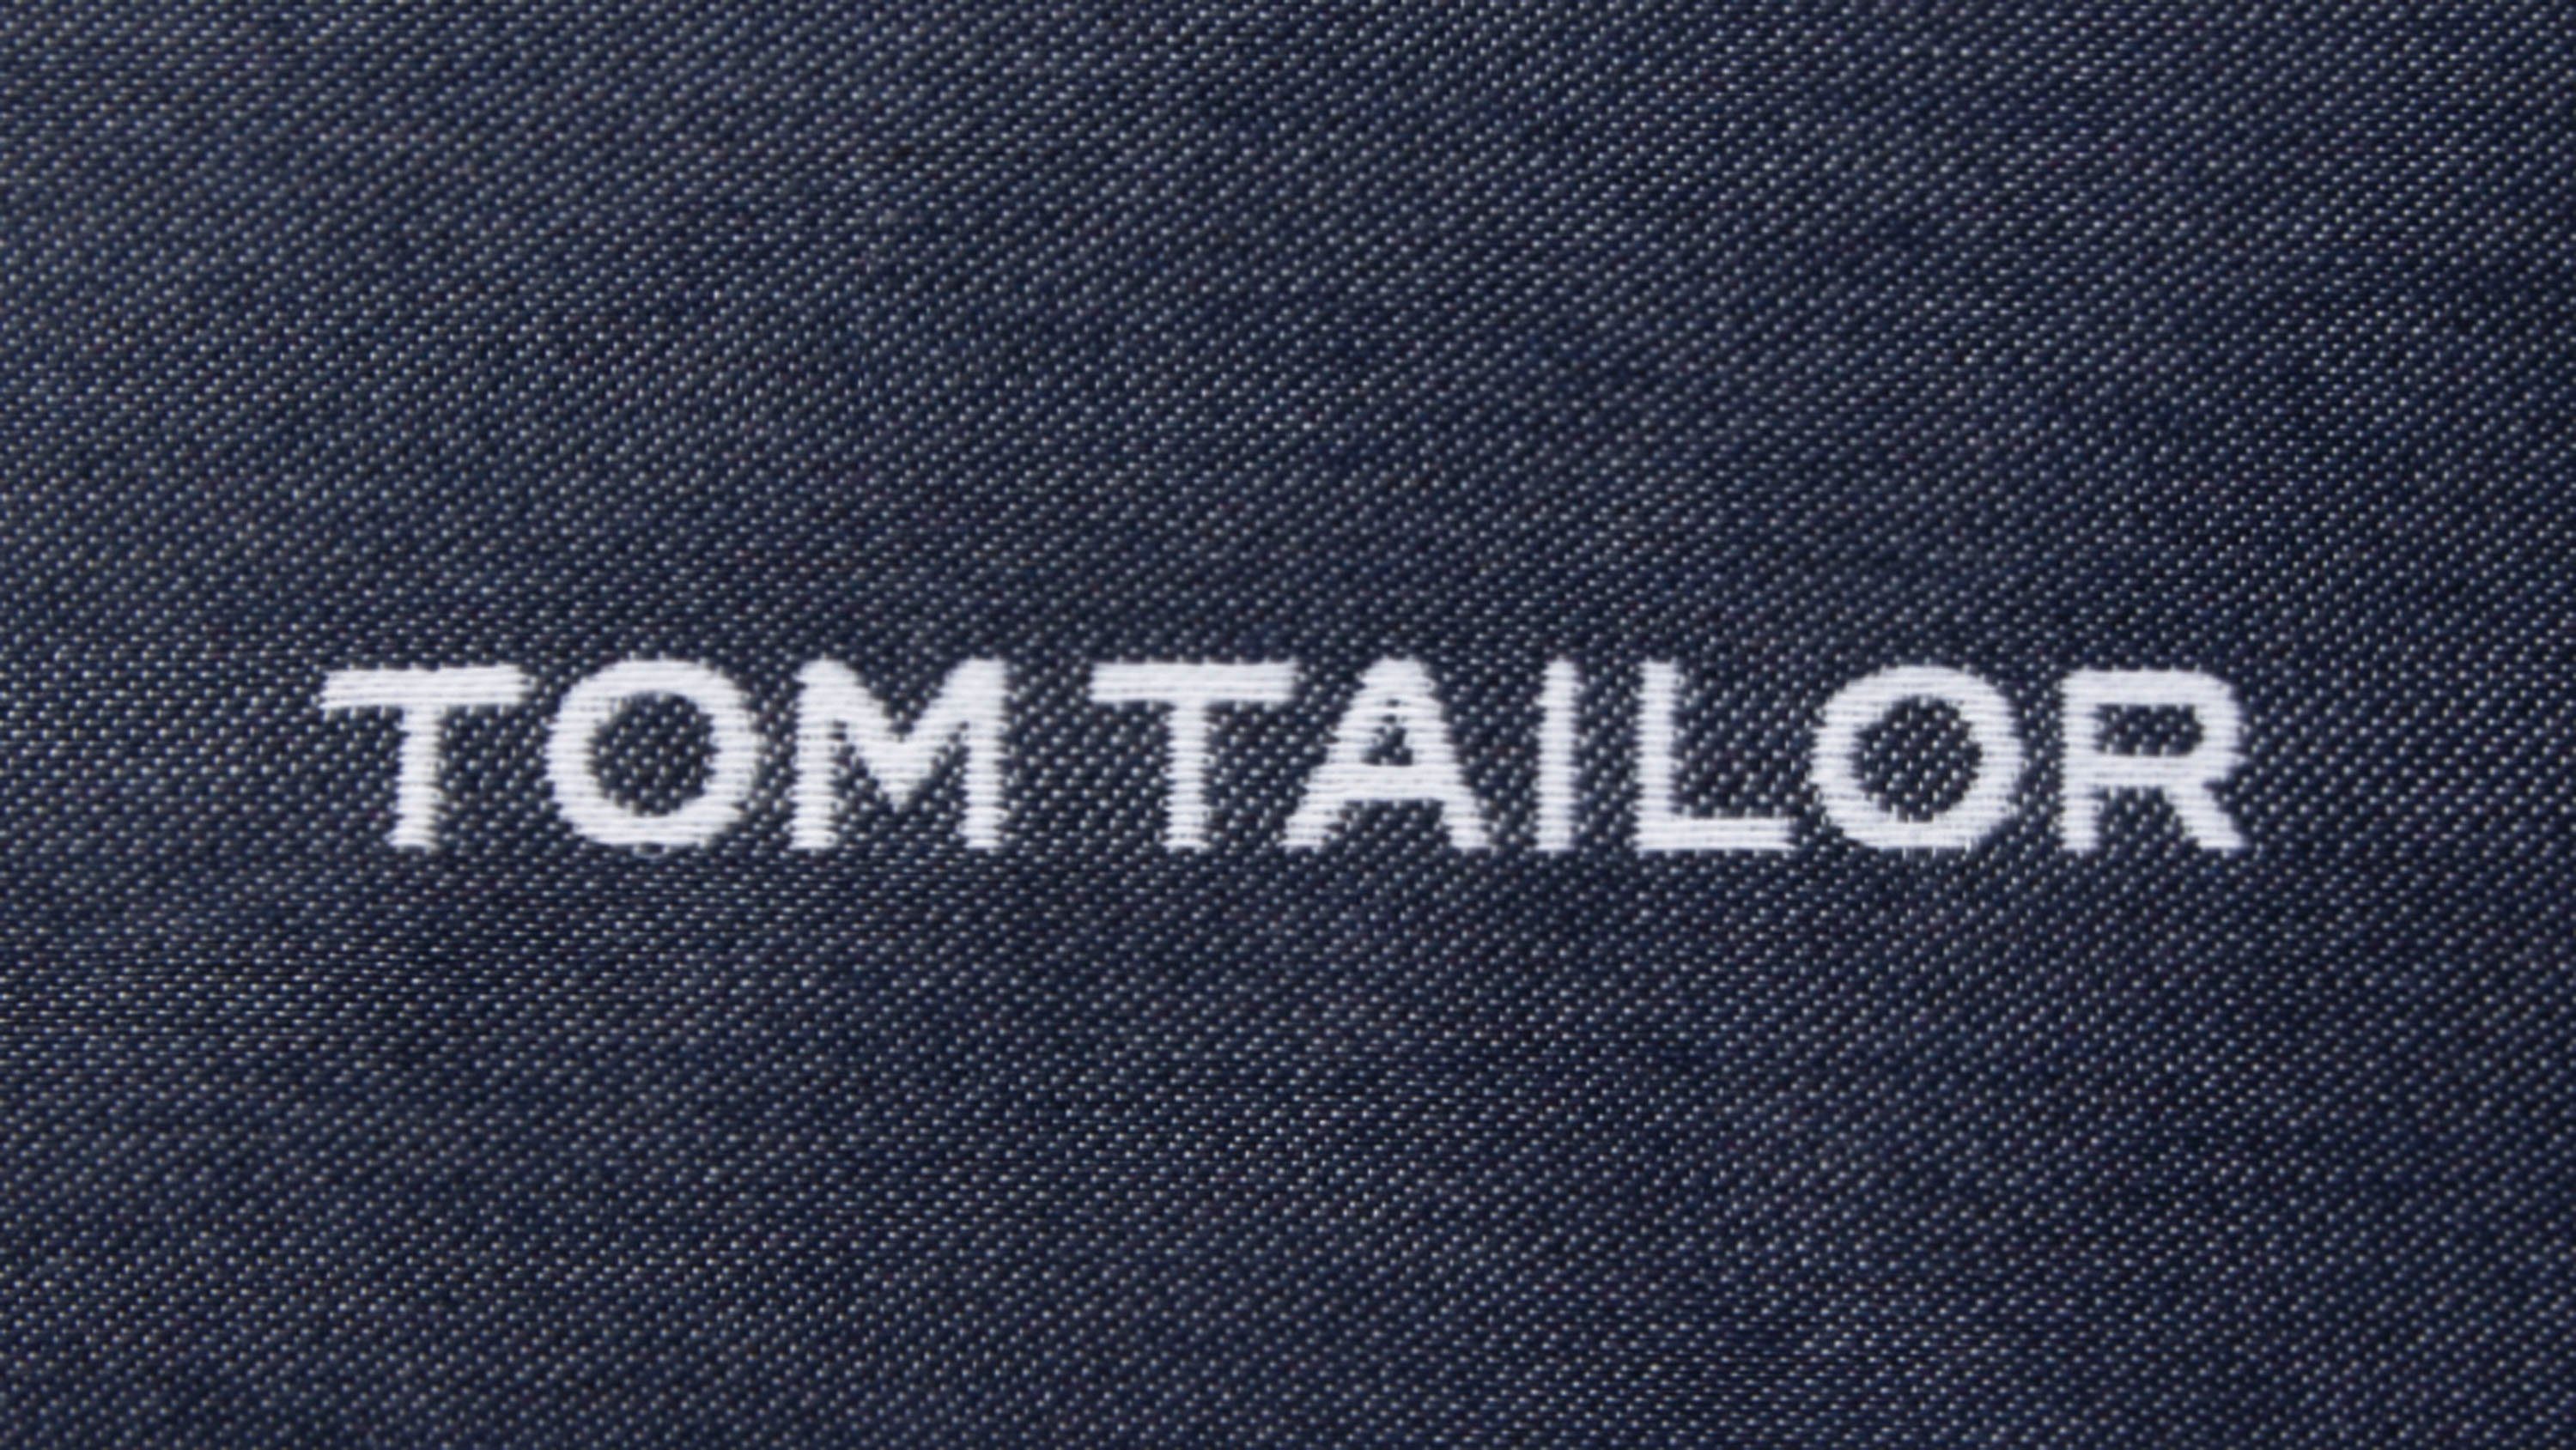 TOM HOME 1 Stück Markenlogo, Füllung, mit eingewebtem marine/dunkelblau/blau/nachtblau TAILOR ohne Dekokissen Logo, Kissenhülle